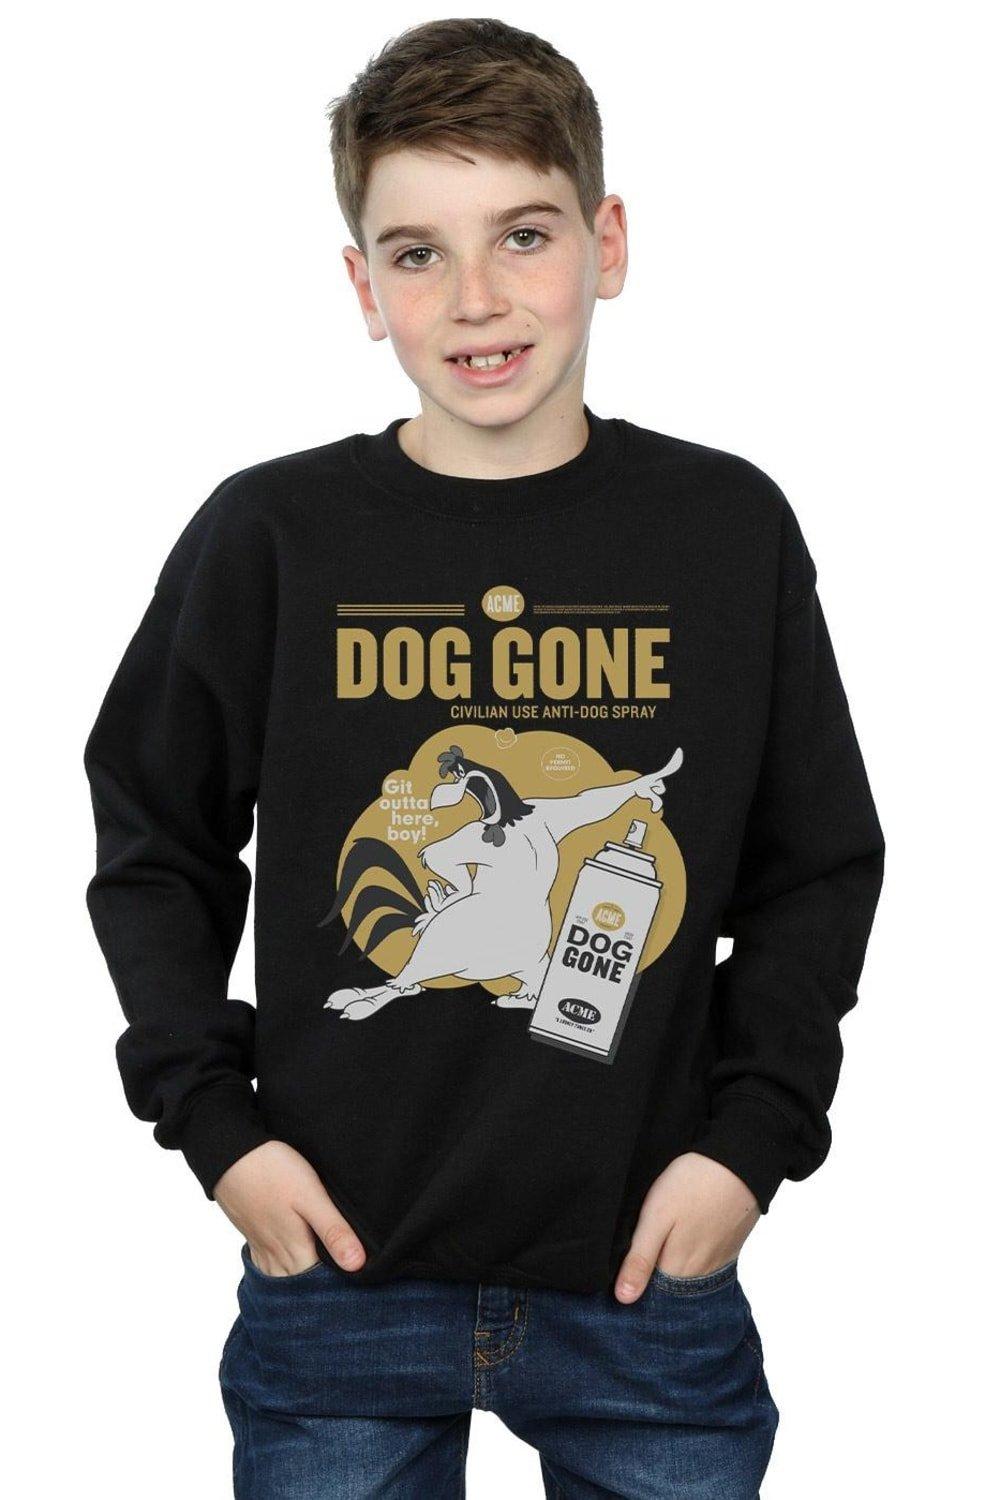 Foghorn Leghorn Dog Gone Sweatshirt